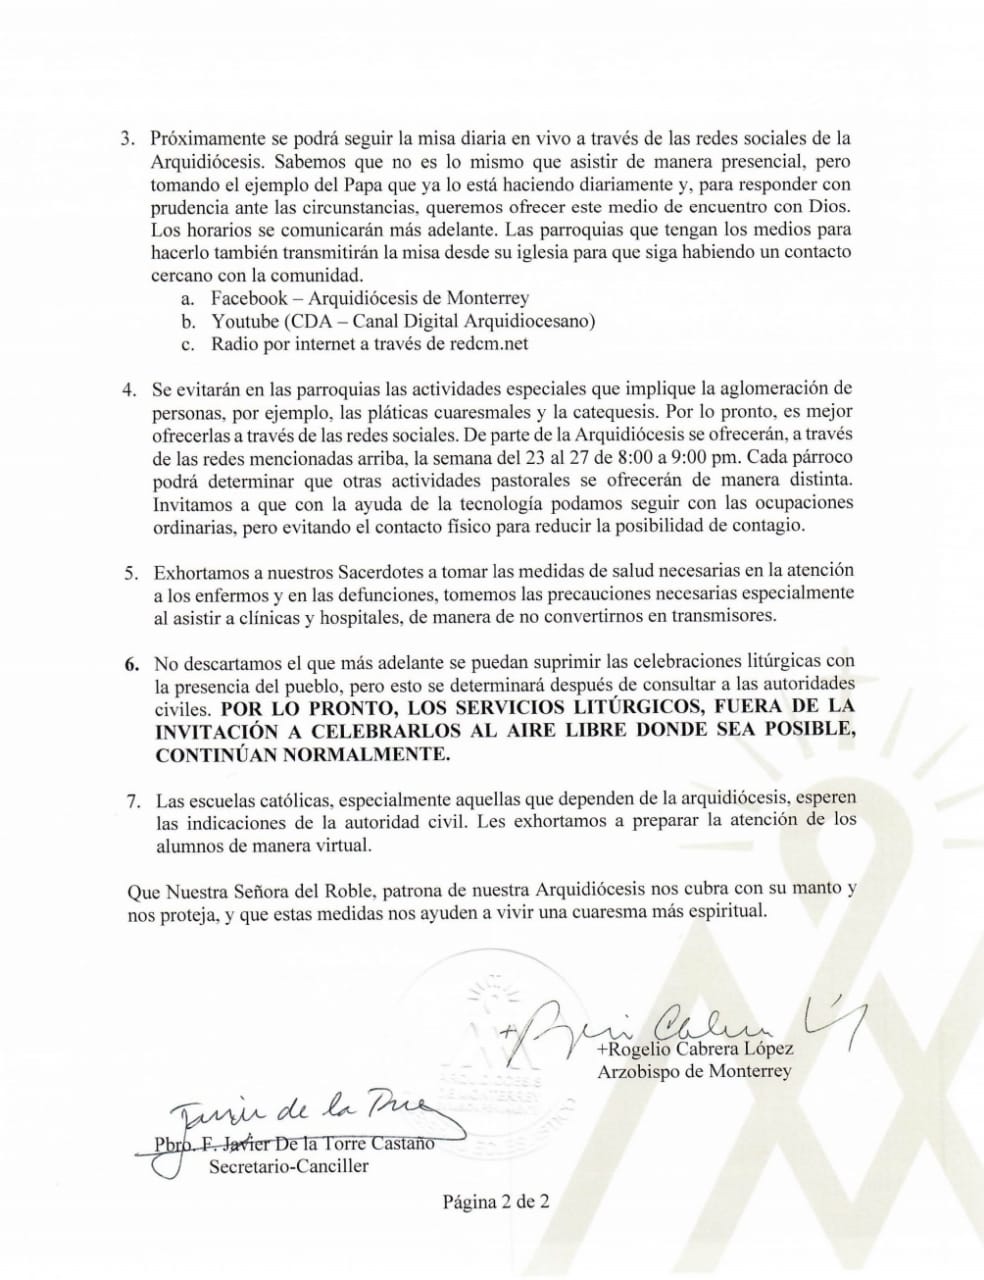 200318 Arquidicesos de Monterrey2